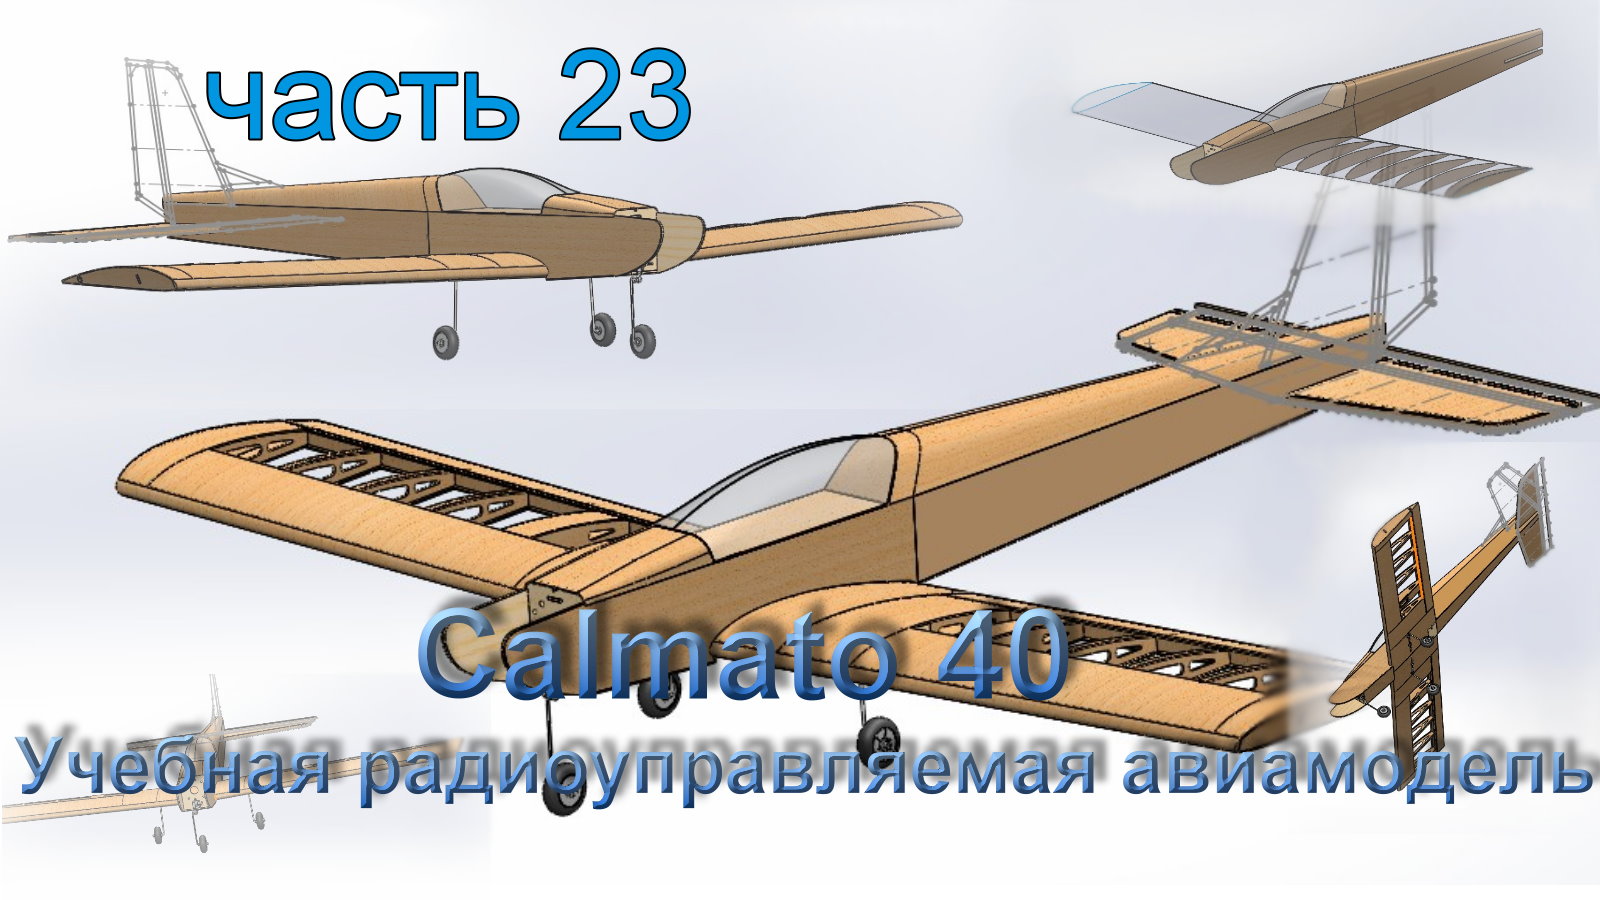 Учебная радиоуправляемая авиамодель Calmato 40 (часть 23)